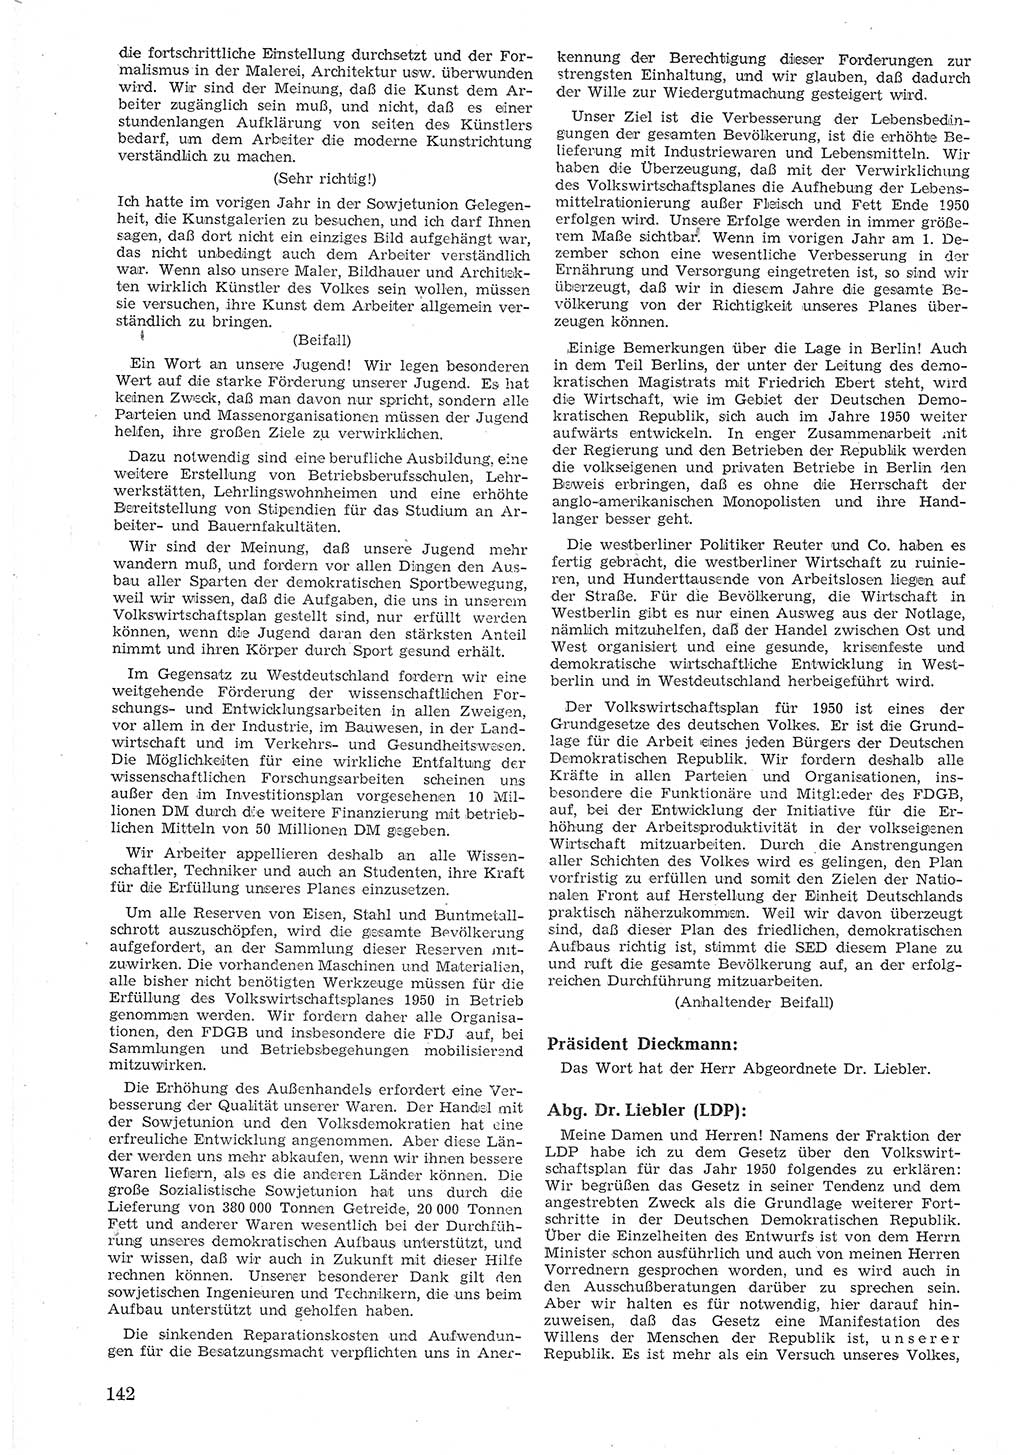 Provisorische Volkskammer (VK) der Deutschen Demokratischen Republik (DDR) 1949-1950, Dokument 154 (Prov. VK DDR 1949-1950, Dok. 154)